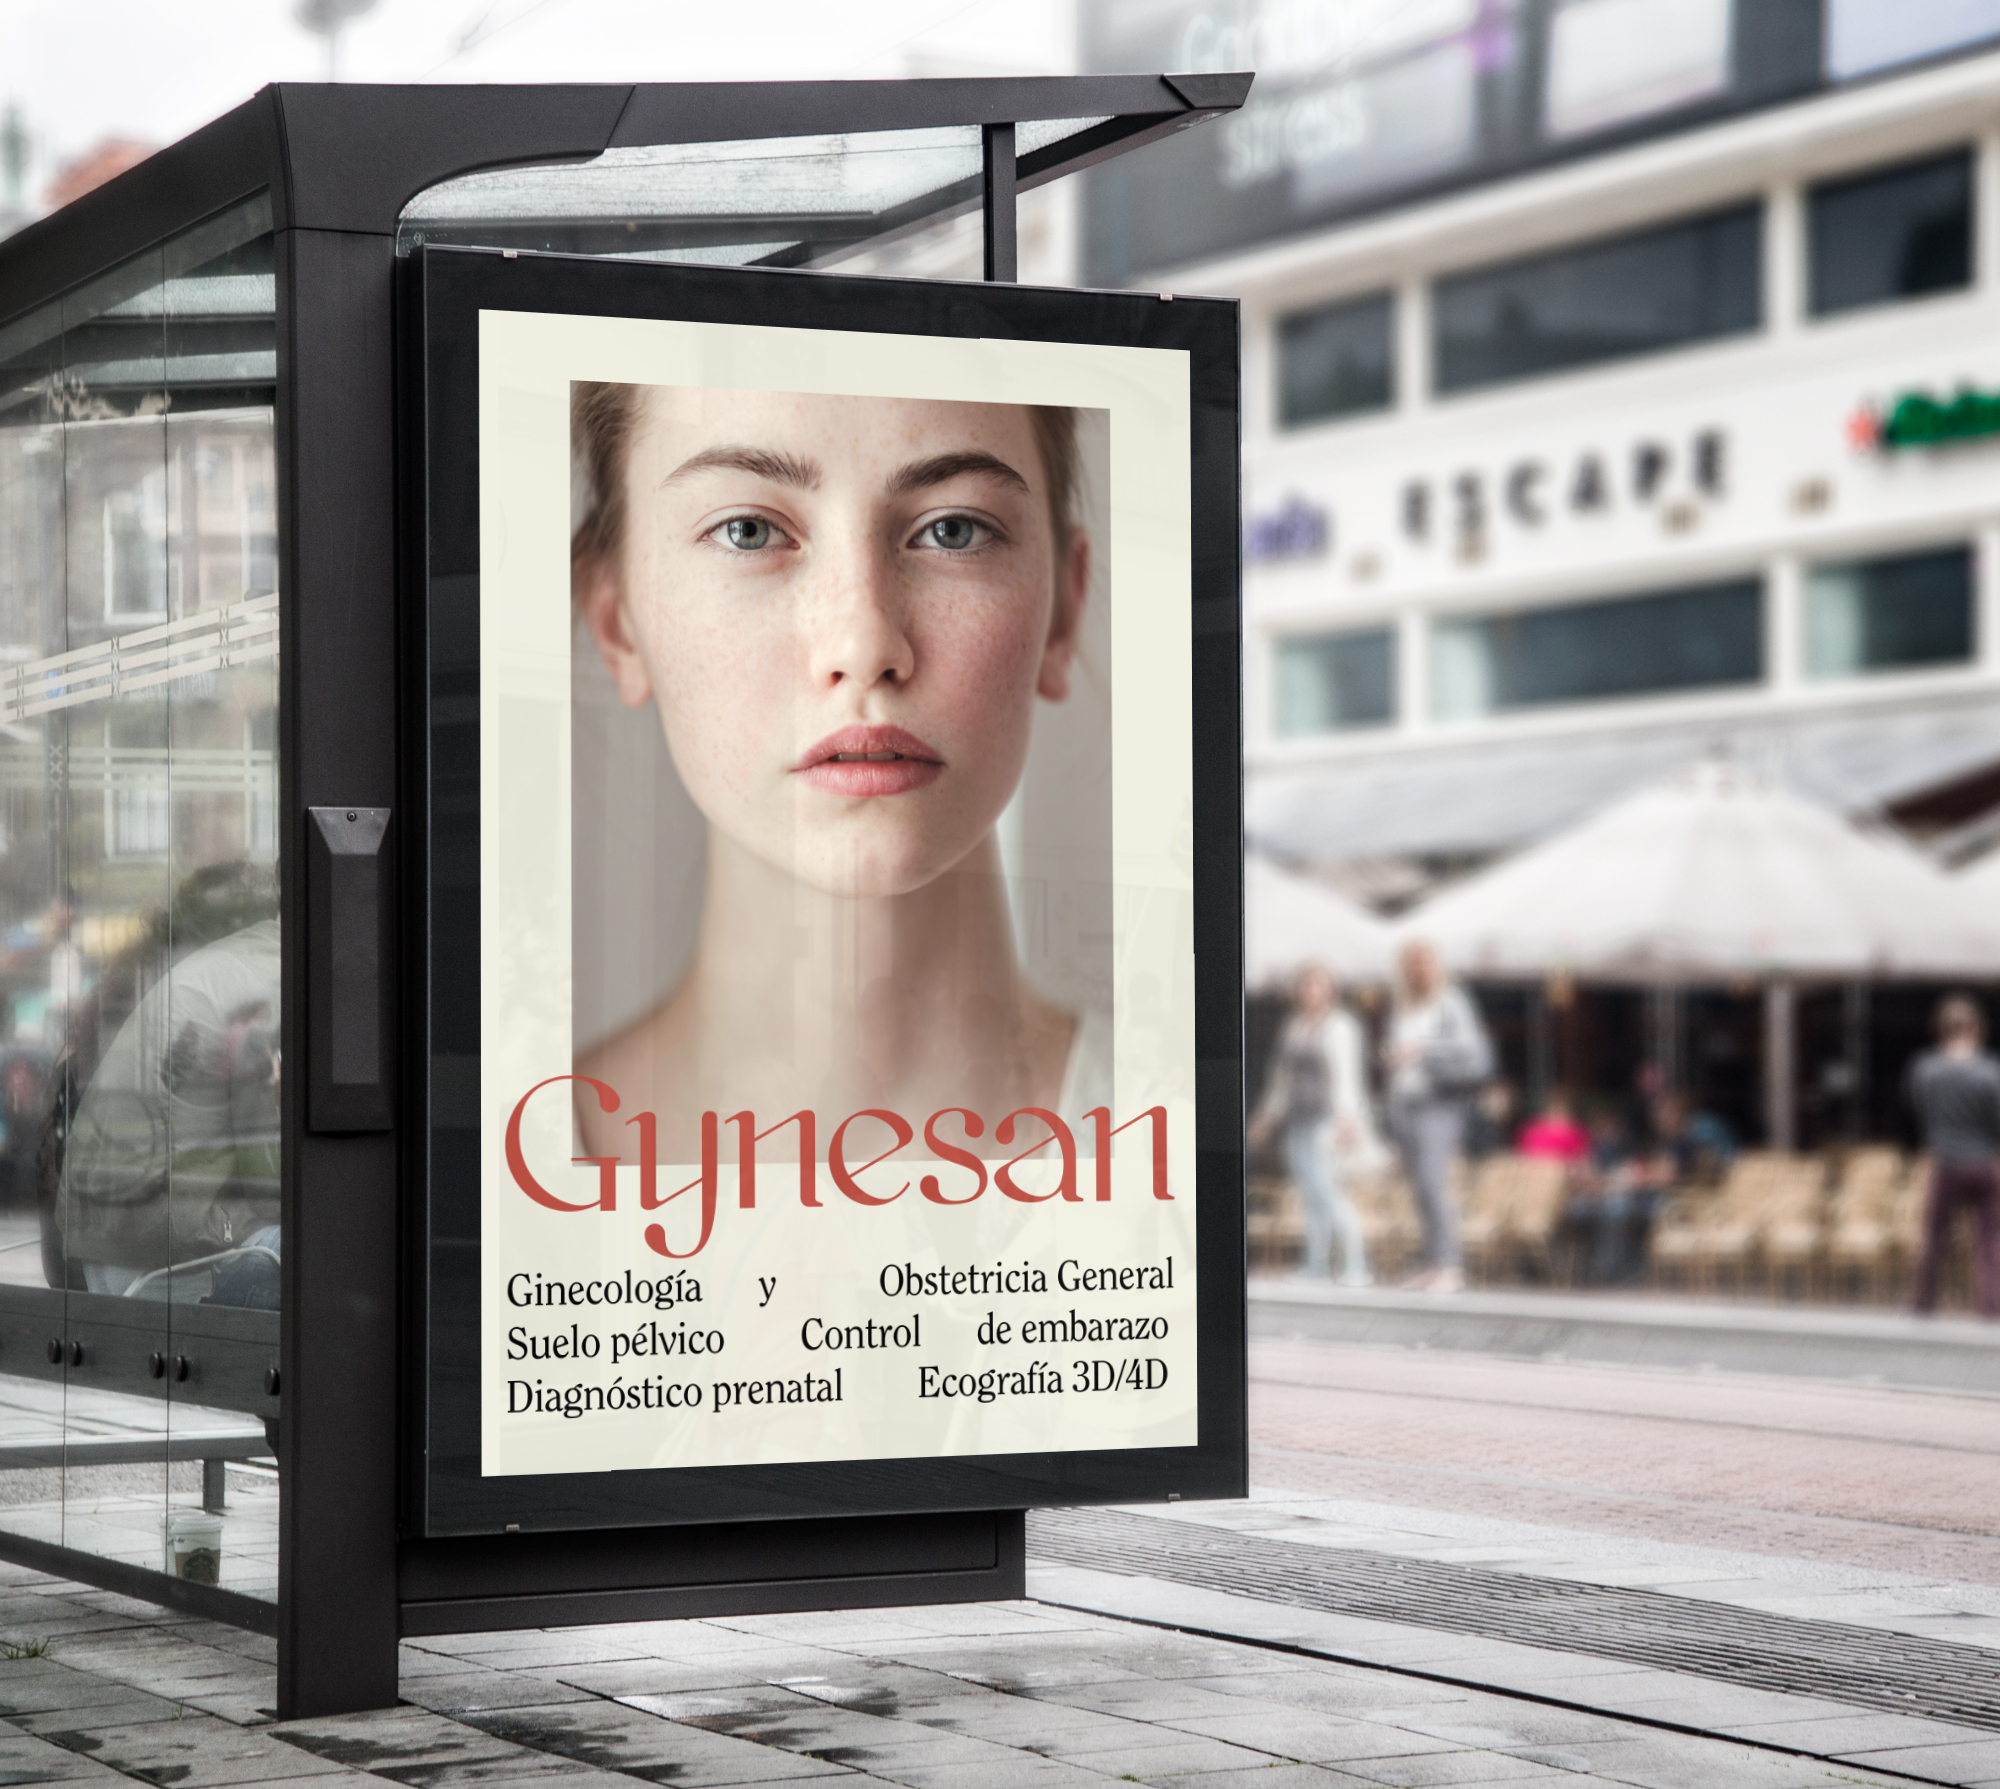 Diseño y desarrollo de identidad visual corporativa para Gynesan. Publicidad en marquesina.